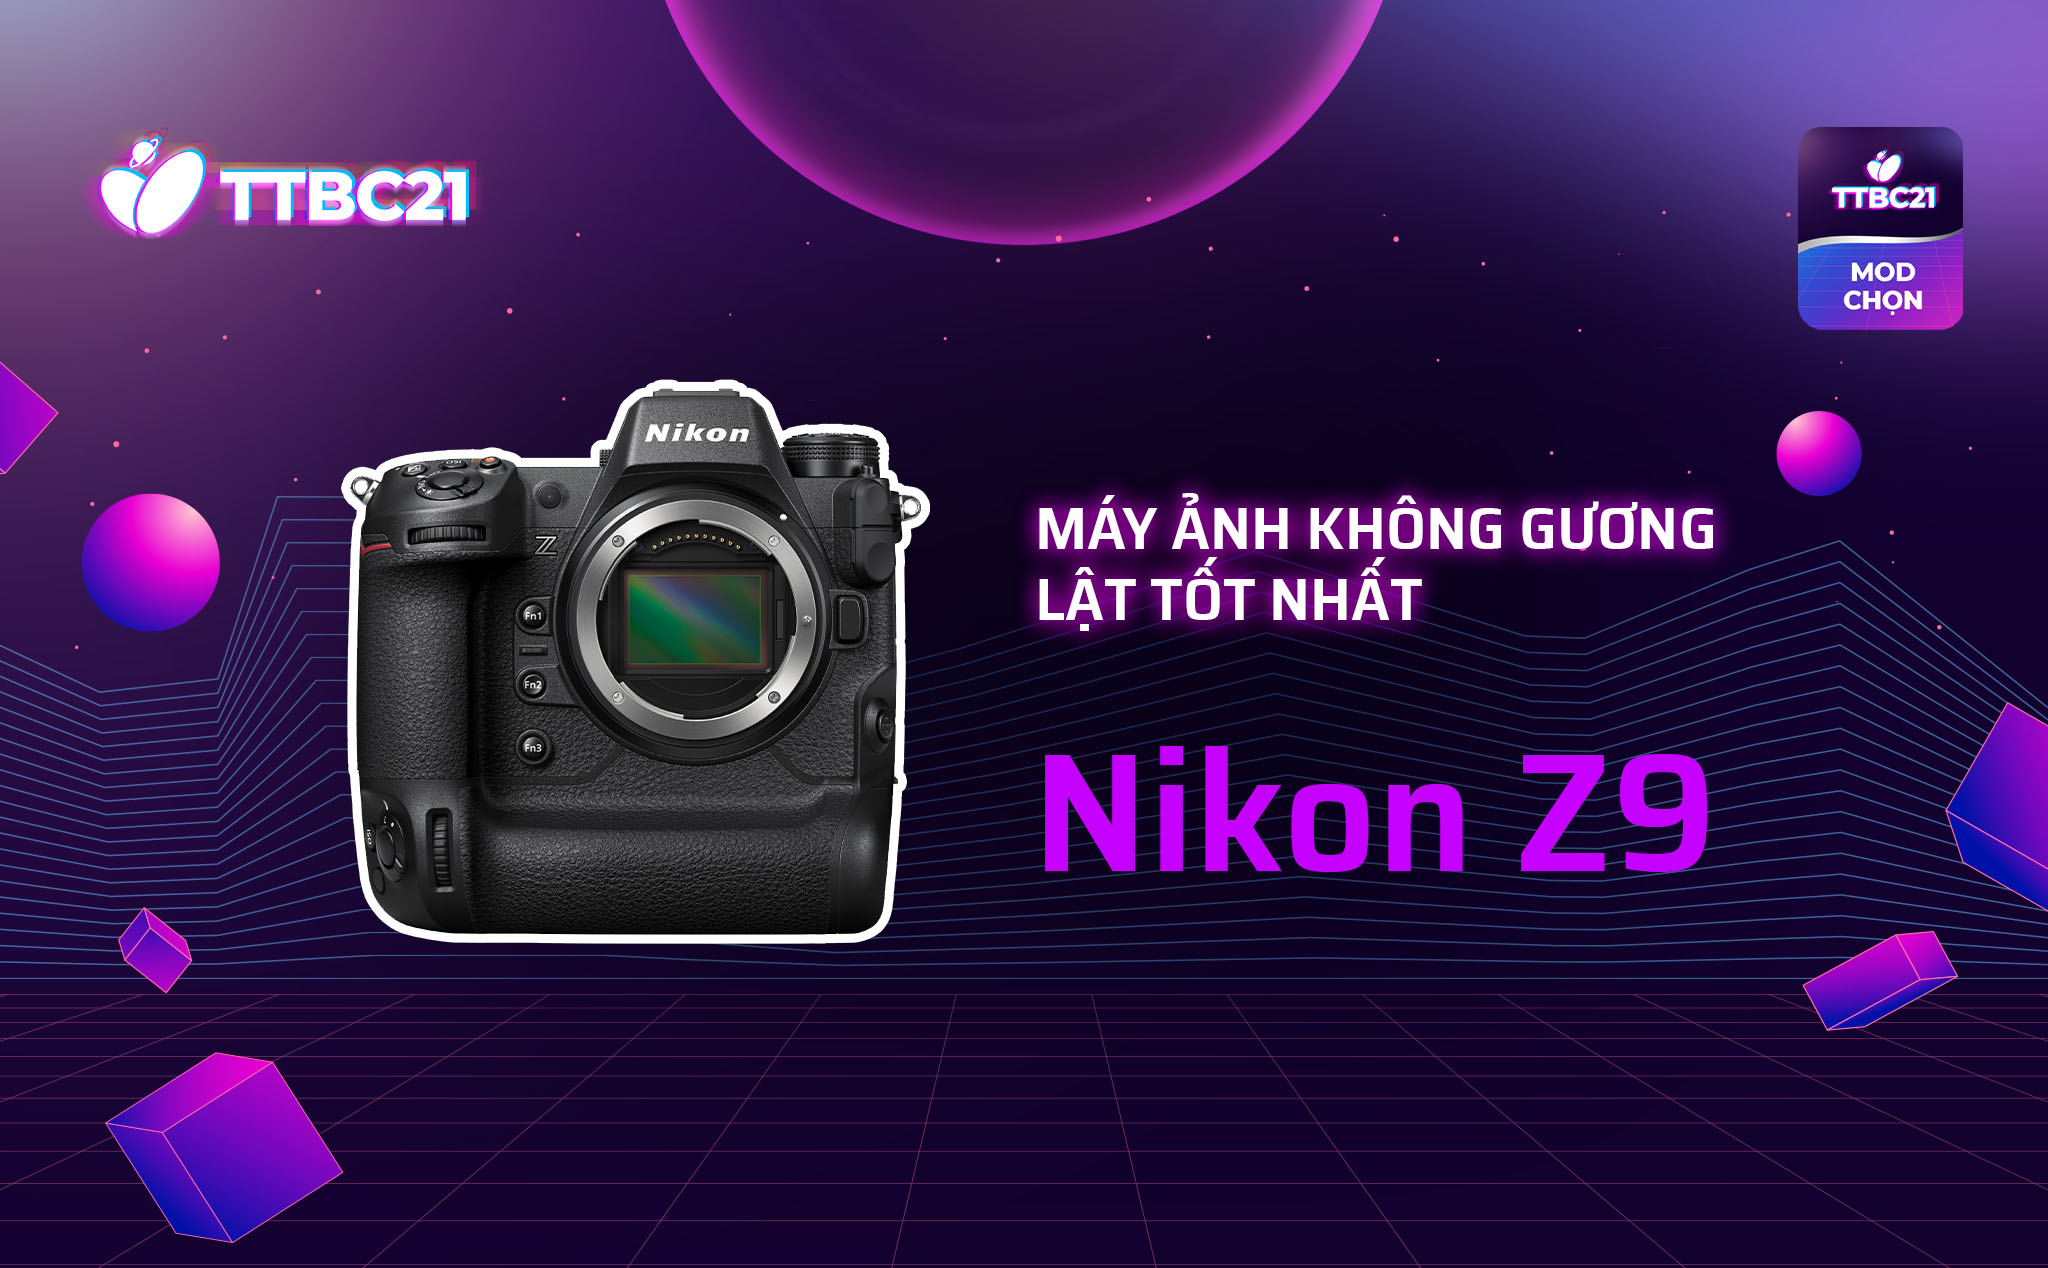 TTBC21 - Mod's Choice: Máy ảnh không gương lật tốt nhất - Nikon Z9